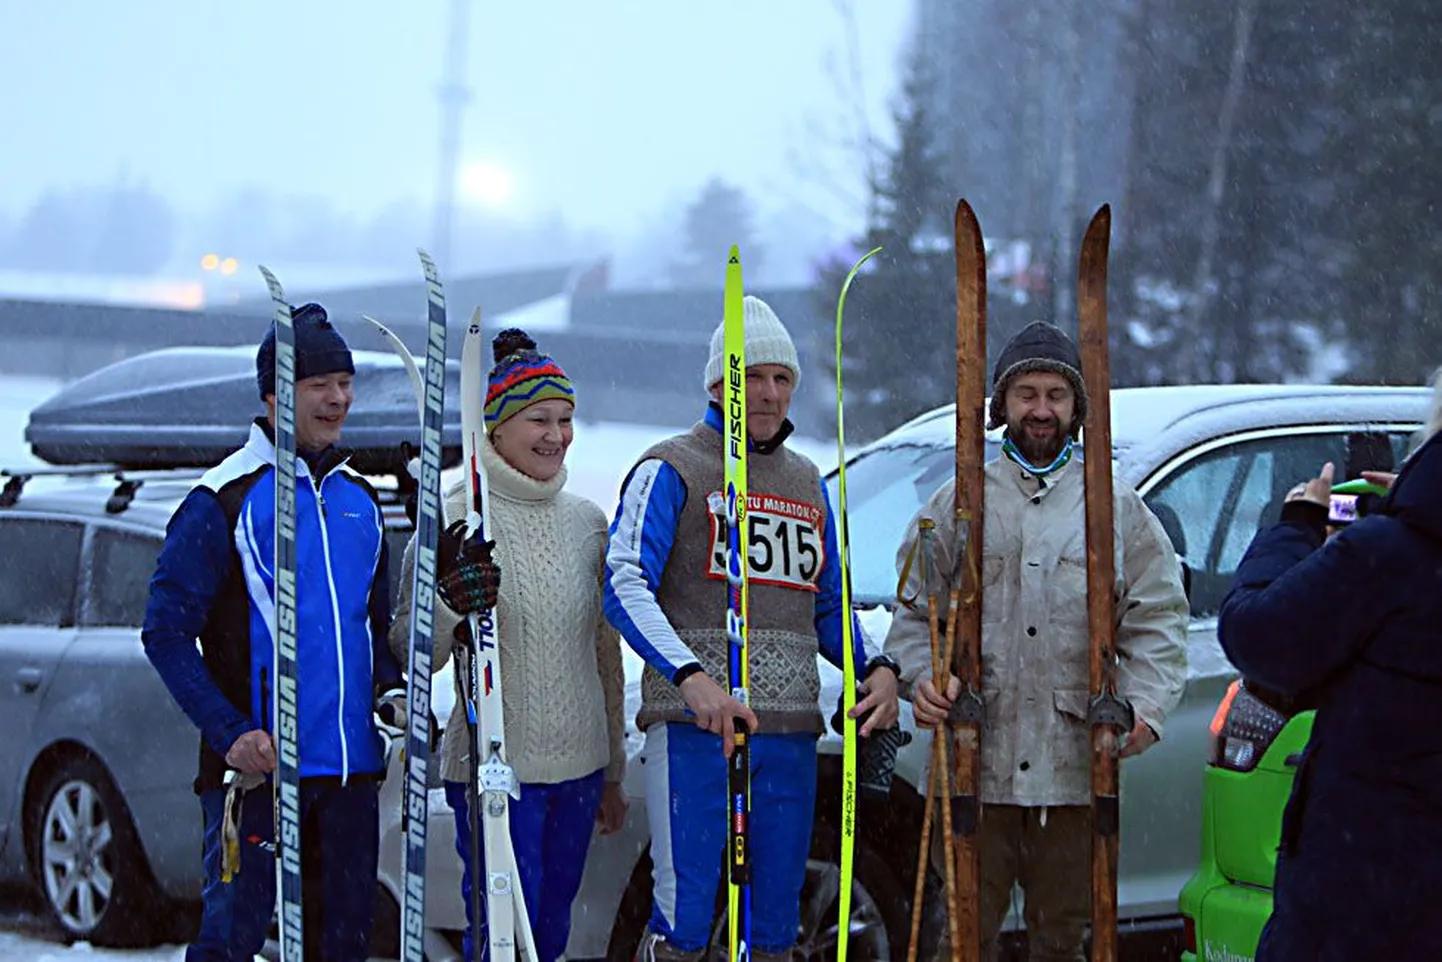 Ретро-забег на лыжах в честь 55-летия Тартуского марафона.